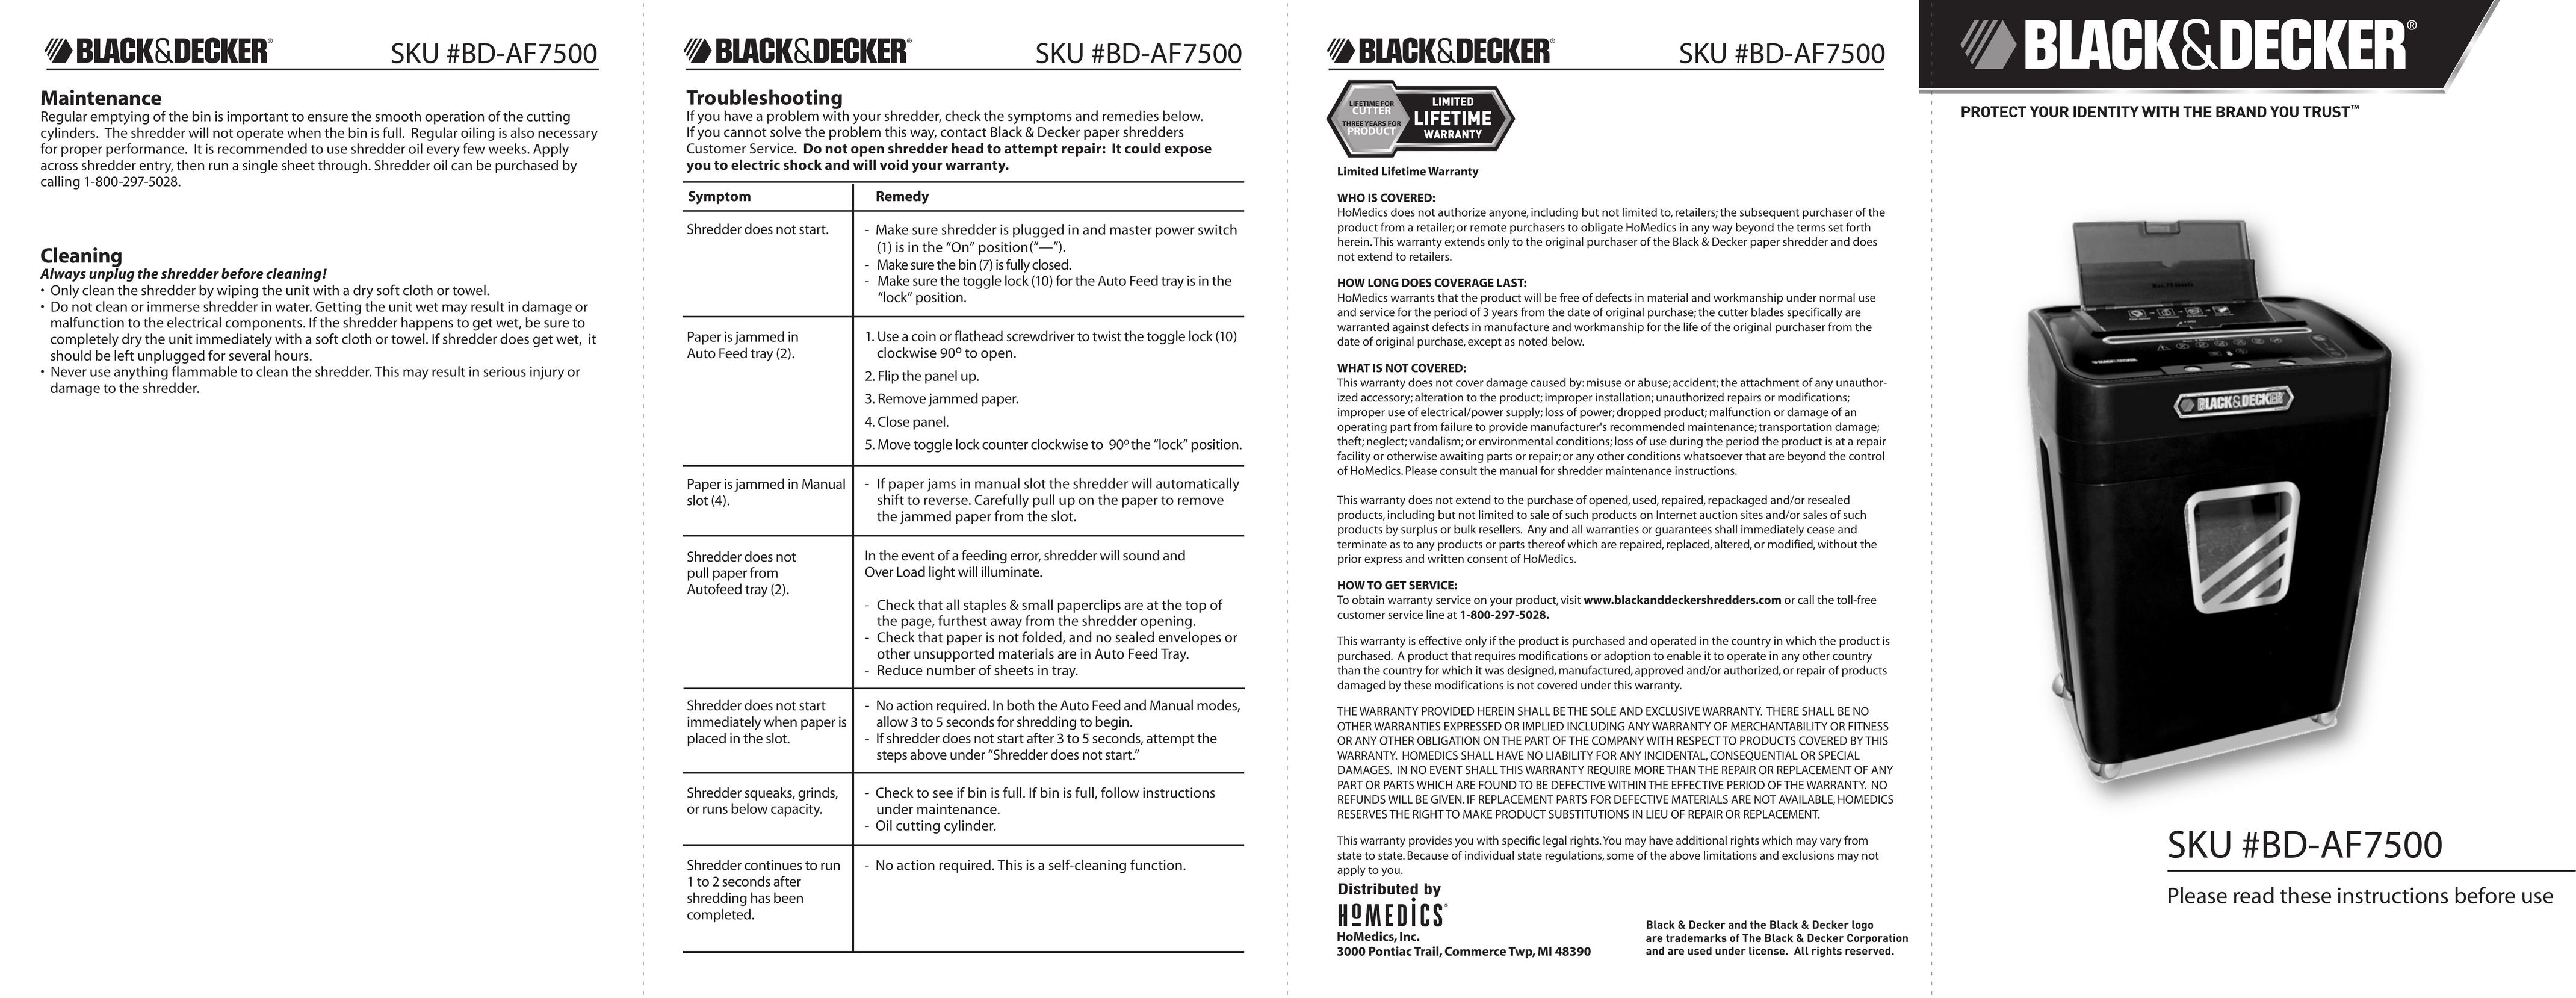 Black & Decker SKU #80-AF7500 Paper Shredder User Manual